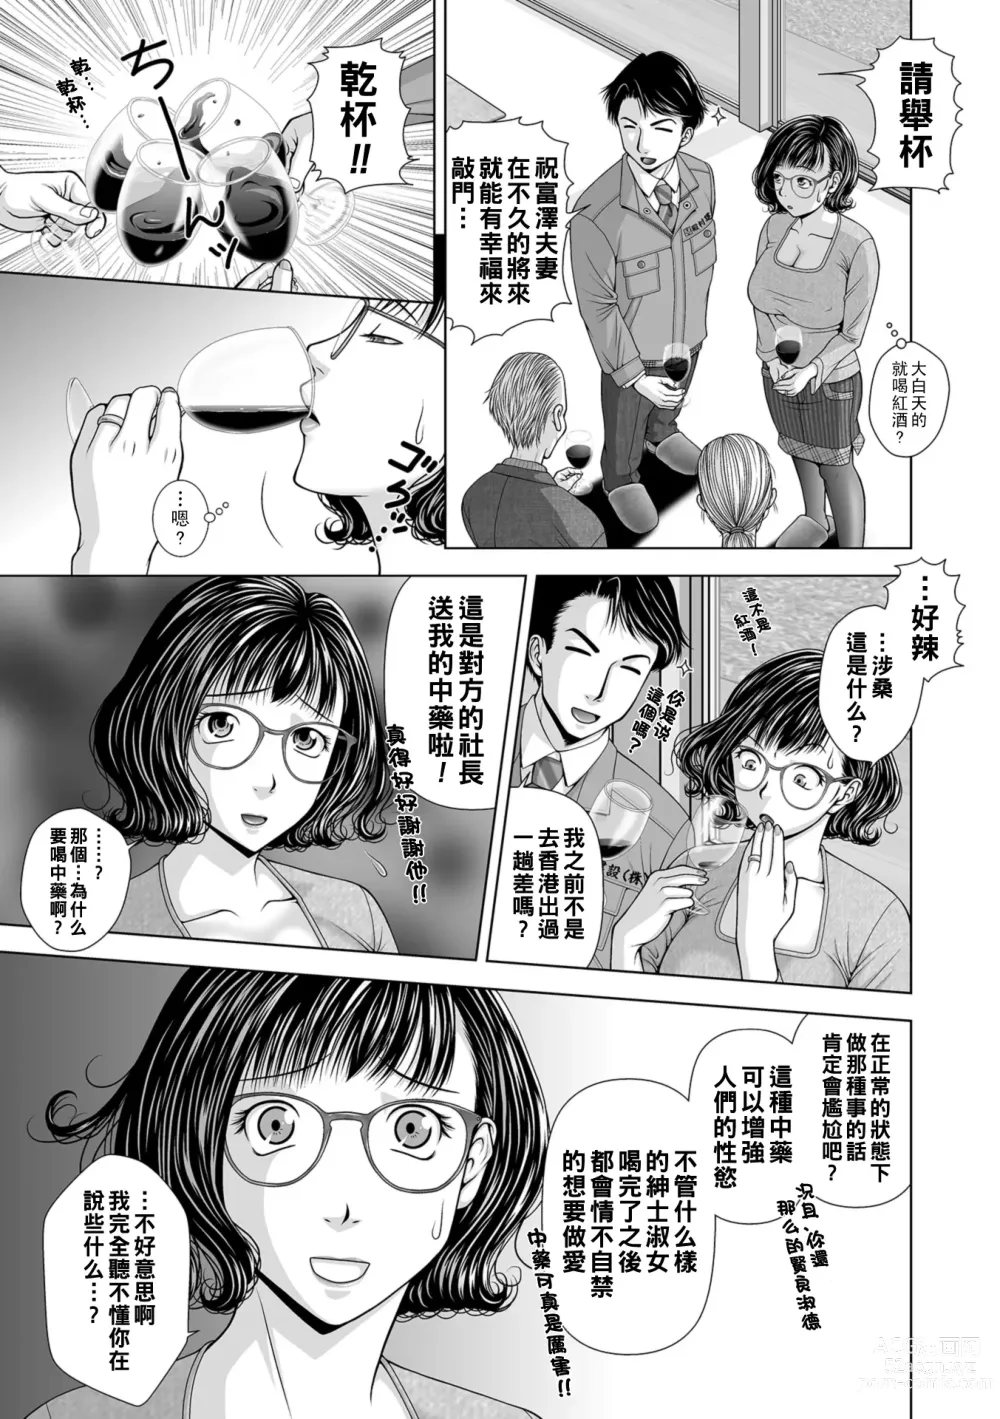 Page 5 of manga Ageman-Sama.